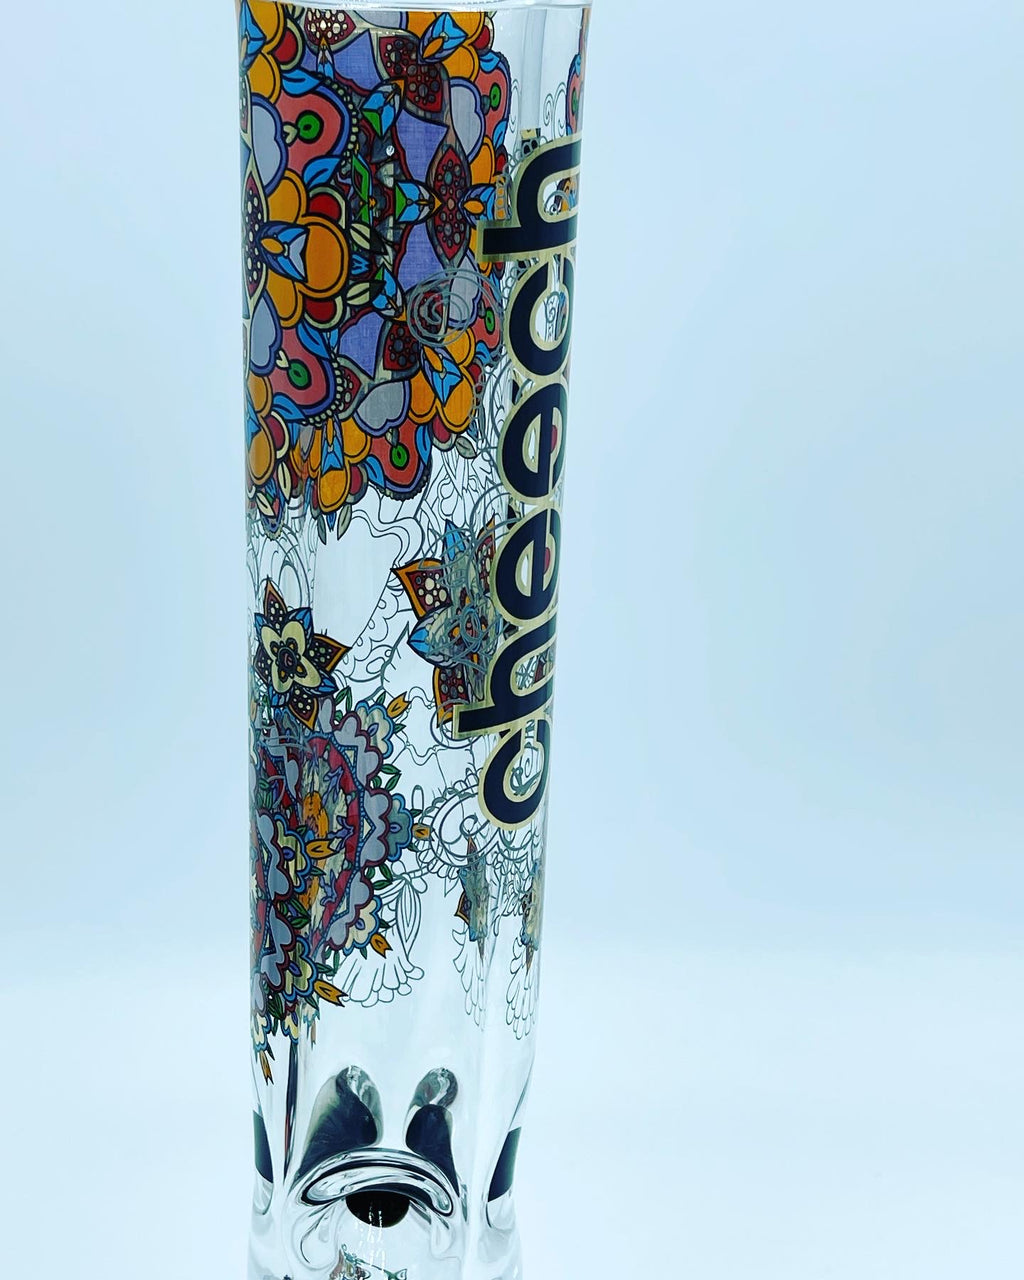 Cheech Glass Flower Beaker